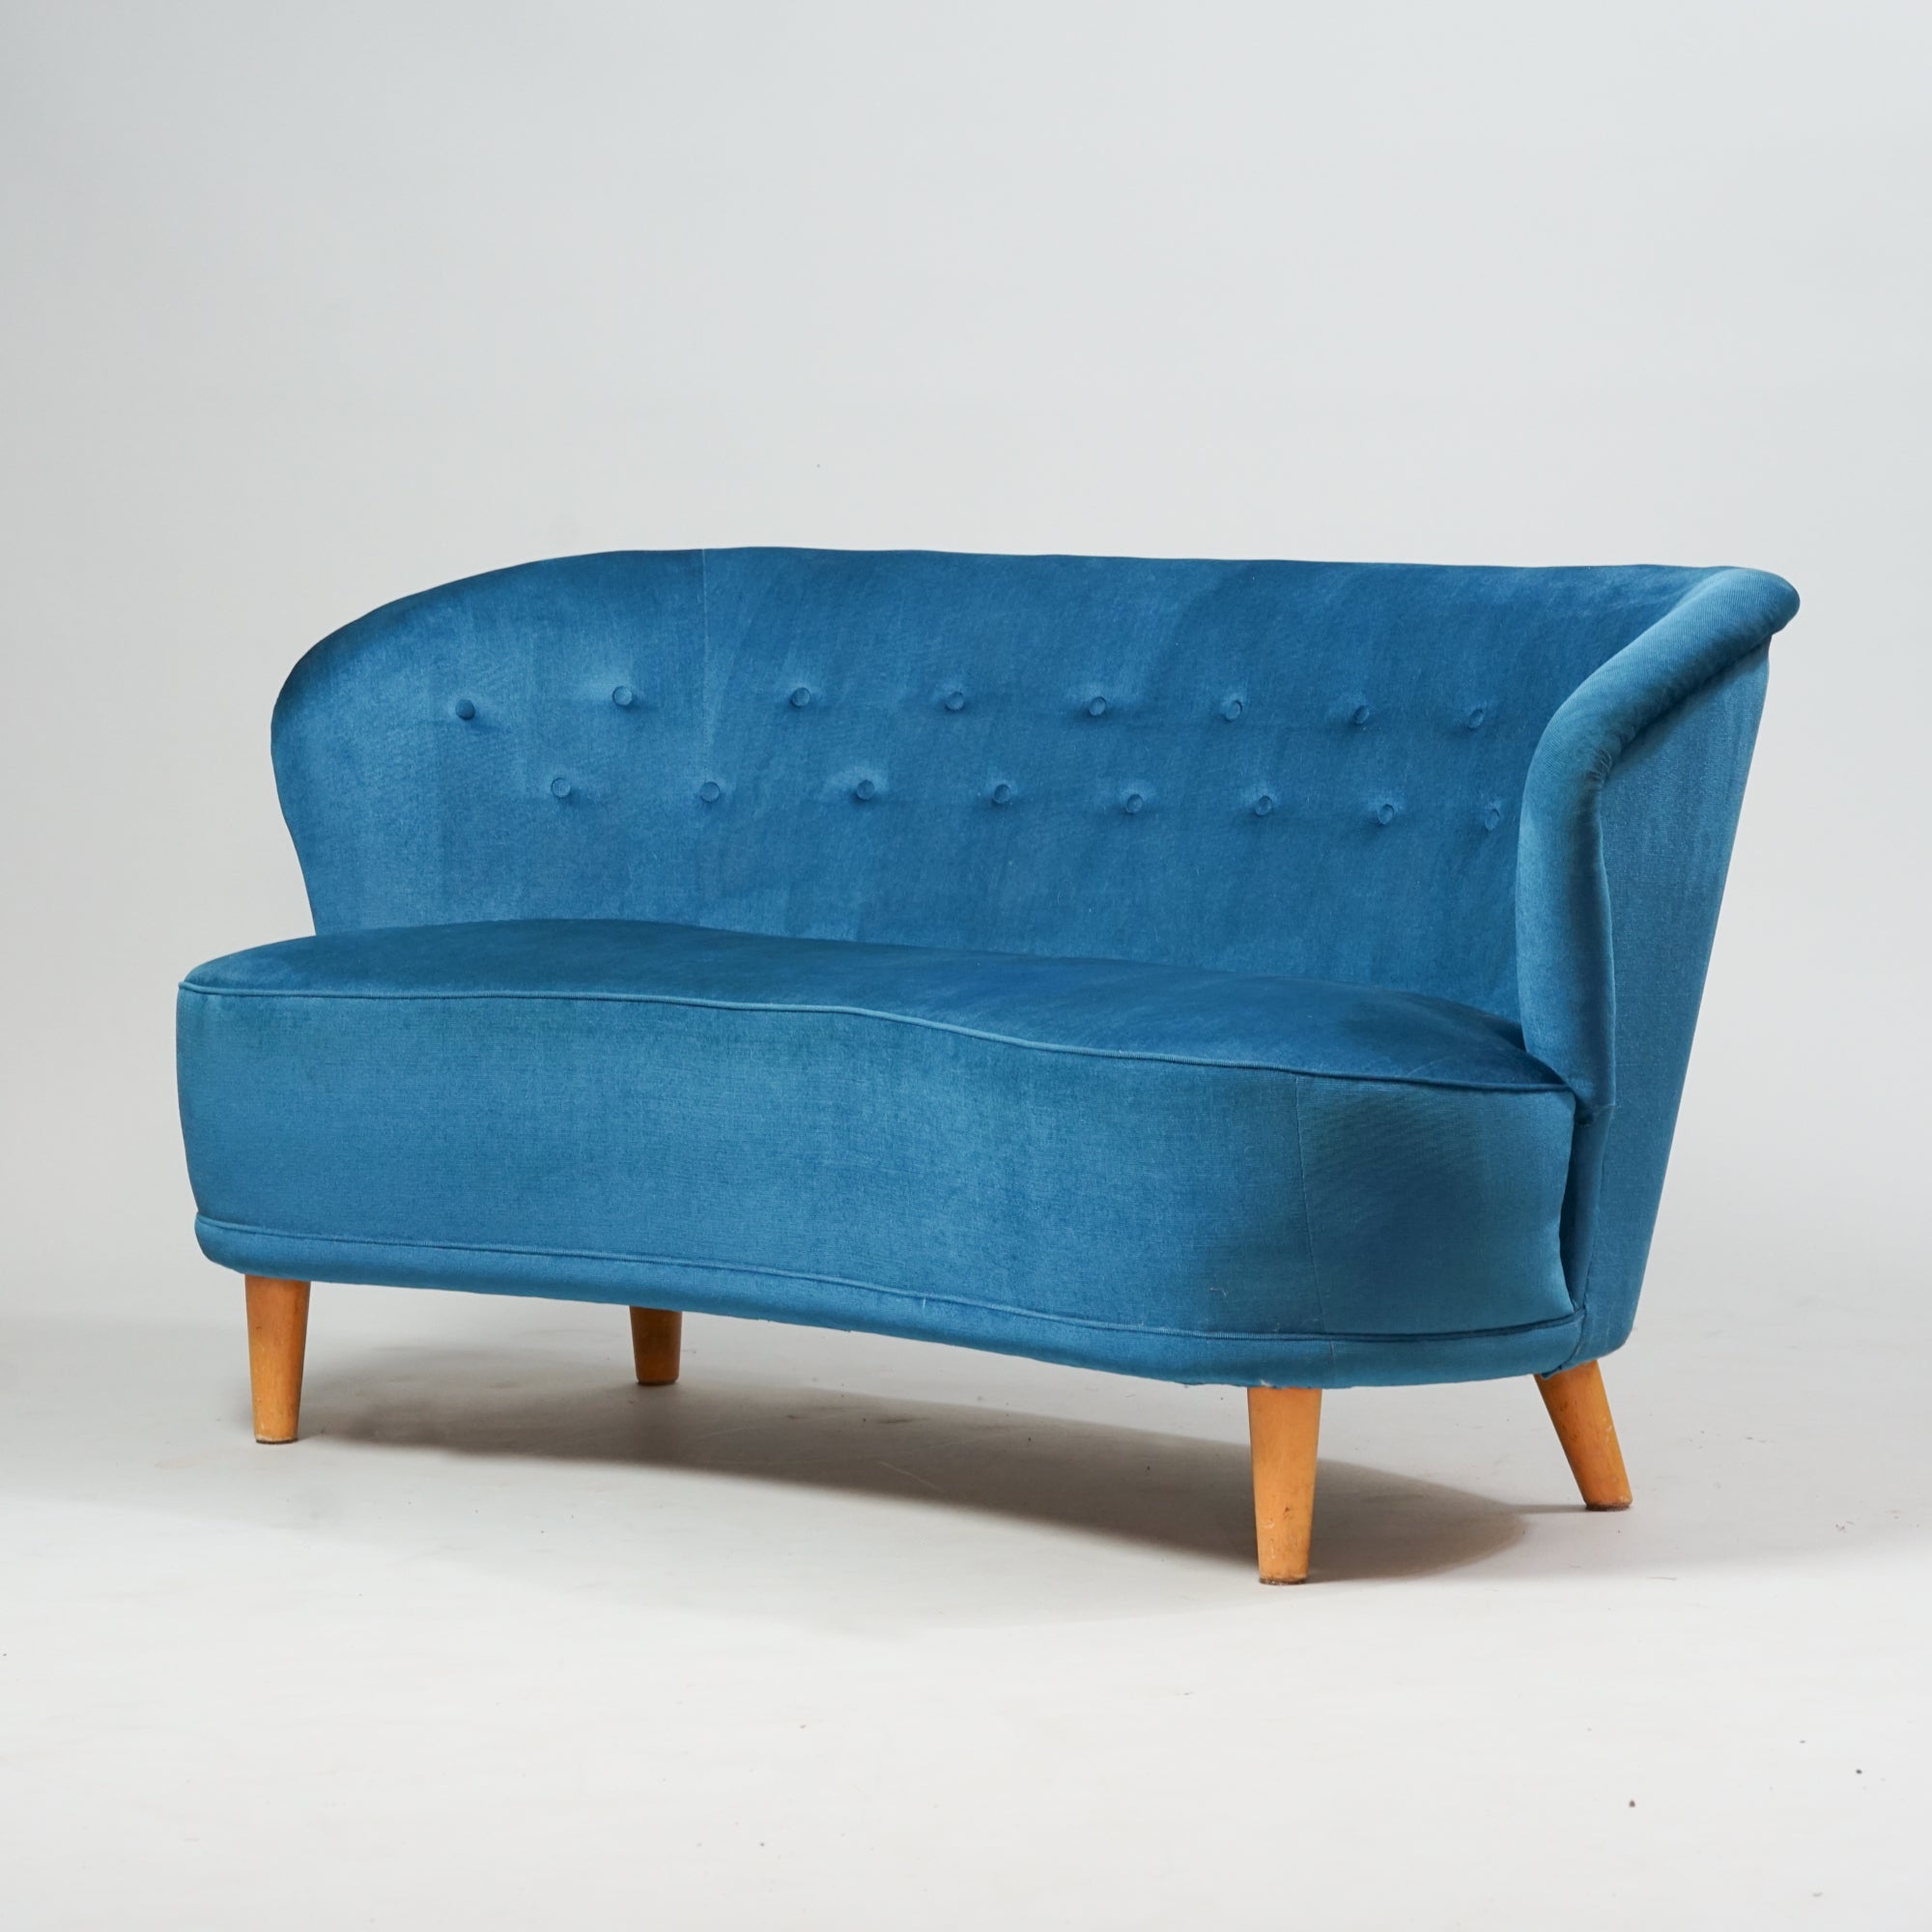 Sininen 2-istuttava kaareva sohva, jossa neljä puista jalkaa.